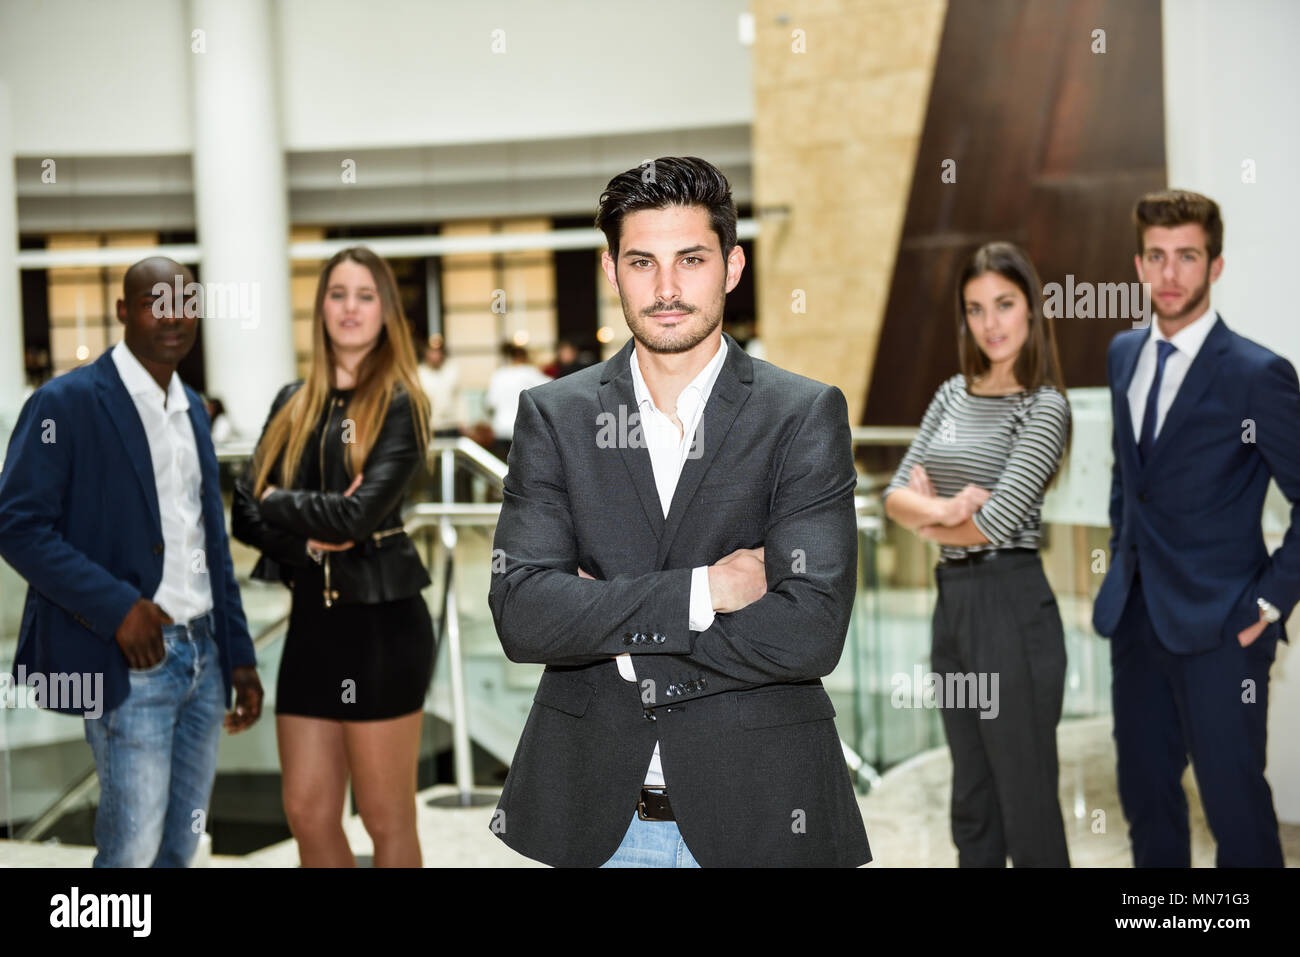 Junge Unternehmer Führer an Kamera suchen mit Waffen im Bürogebäude gekreuzt. Gruppe von muti-ethnischen Menschen im Hintergrund Stockfoto